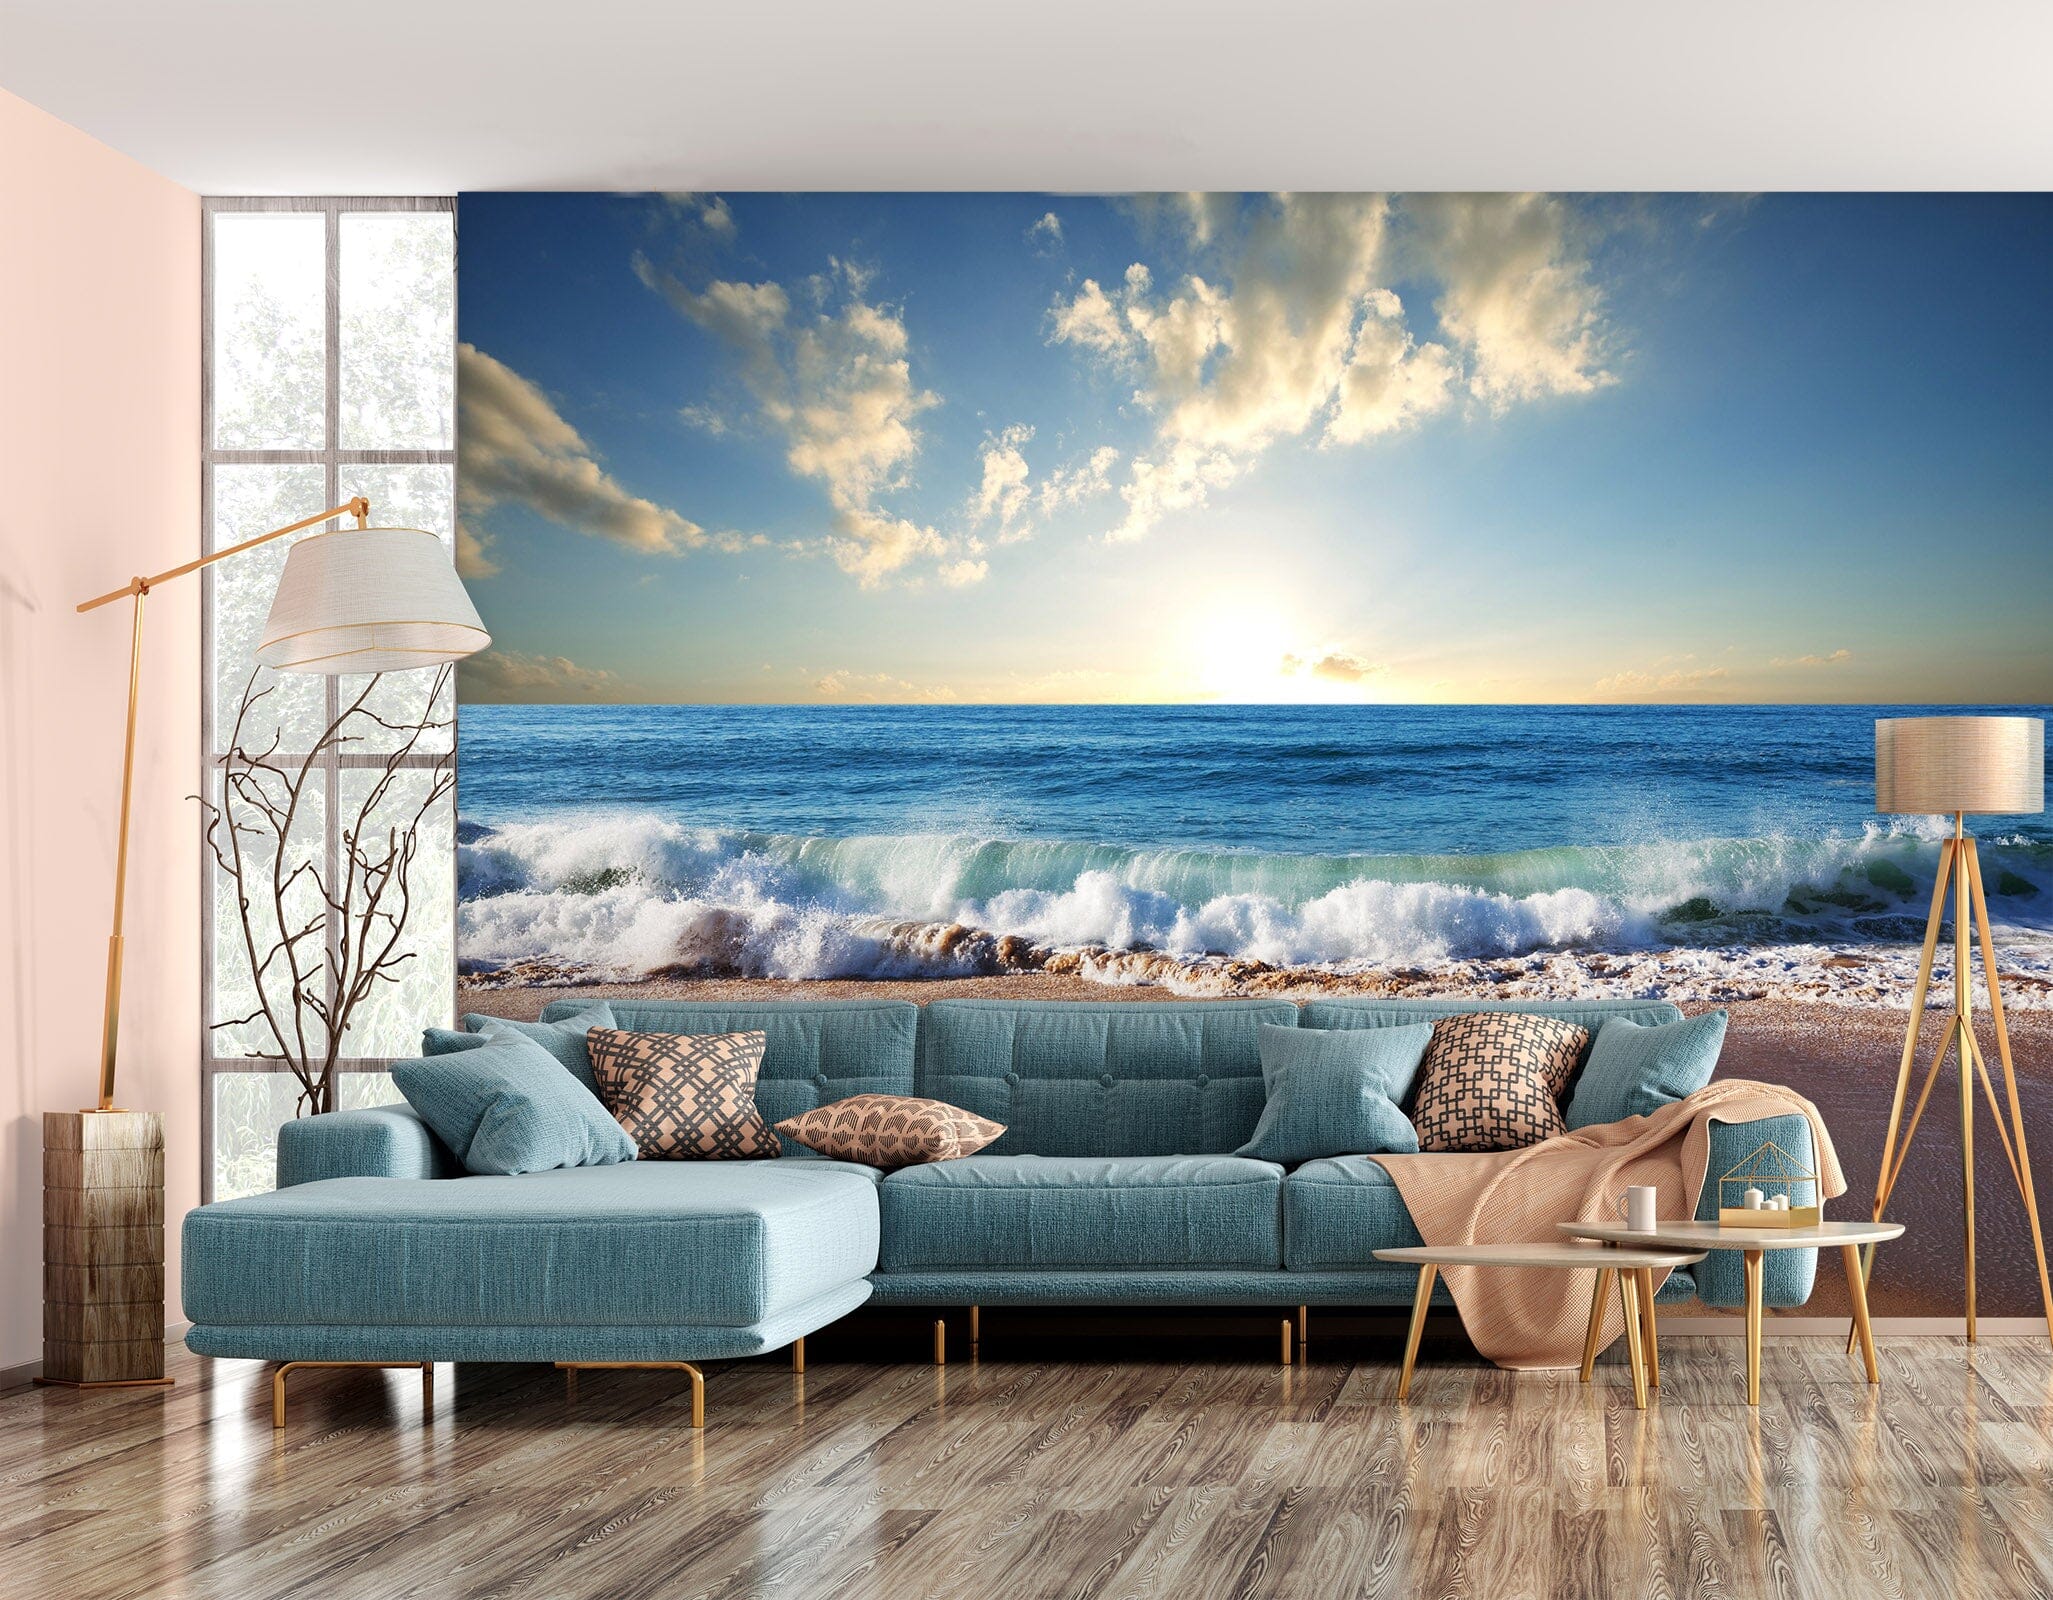 3D Ocean Beach 138 Wall Murals Wallpaper AJ Wallpaper 2 